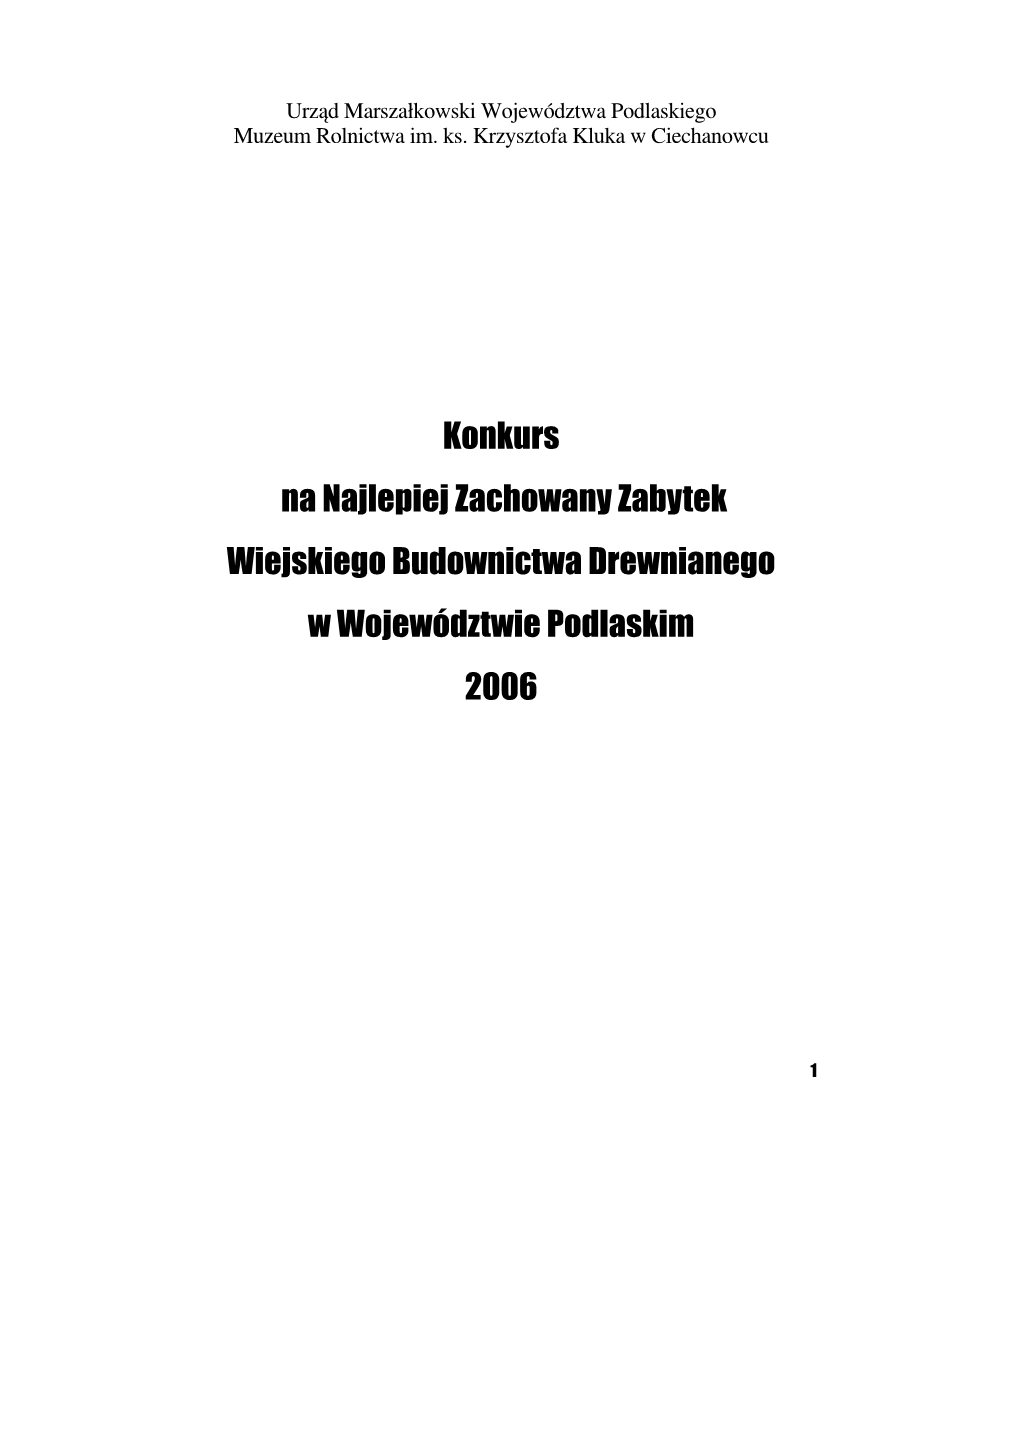 Konkurs Na Najlepiej Zachowany Zabytek Wiejskiego Budownictwa Drewnianego W Województwie Podlaskim 2006